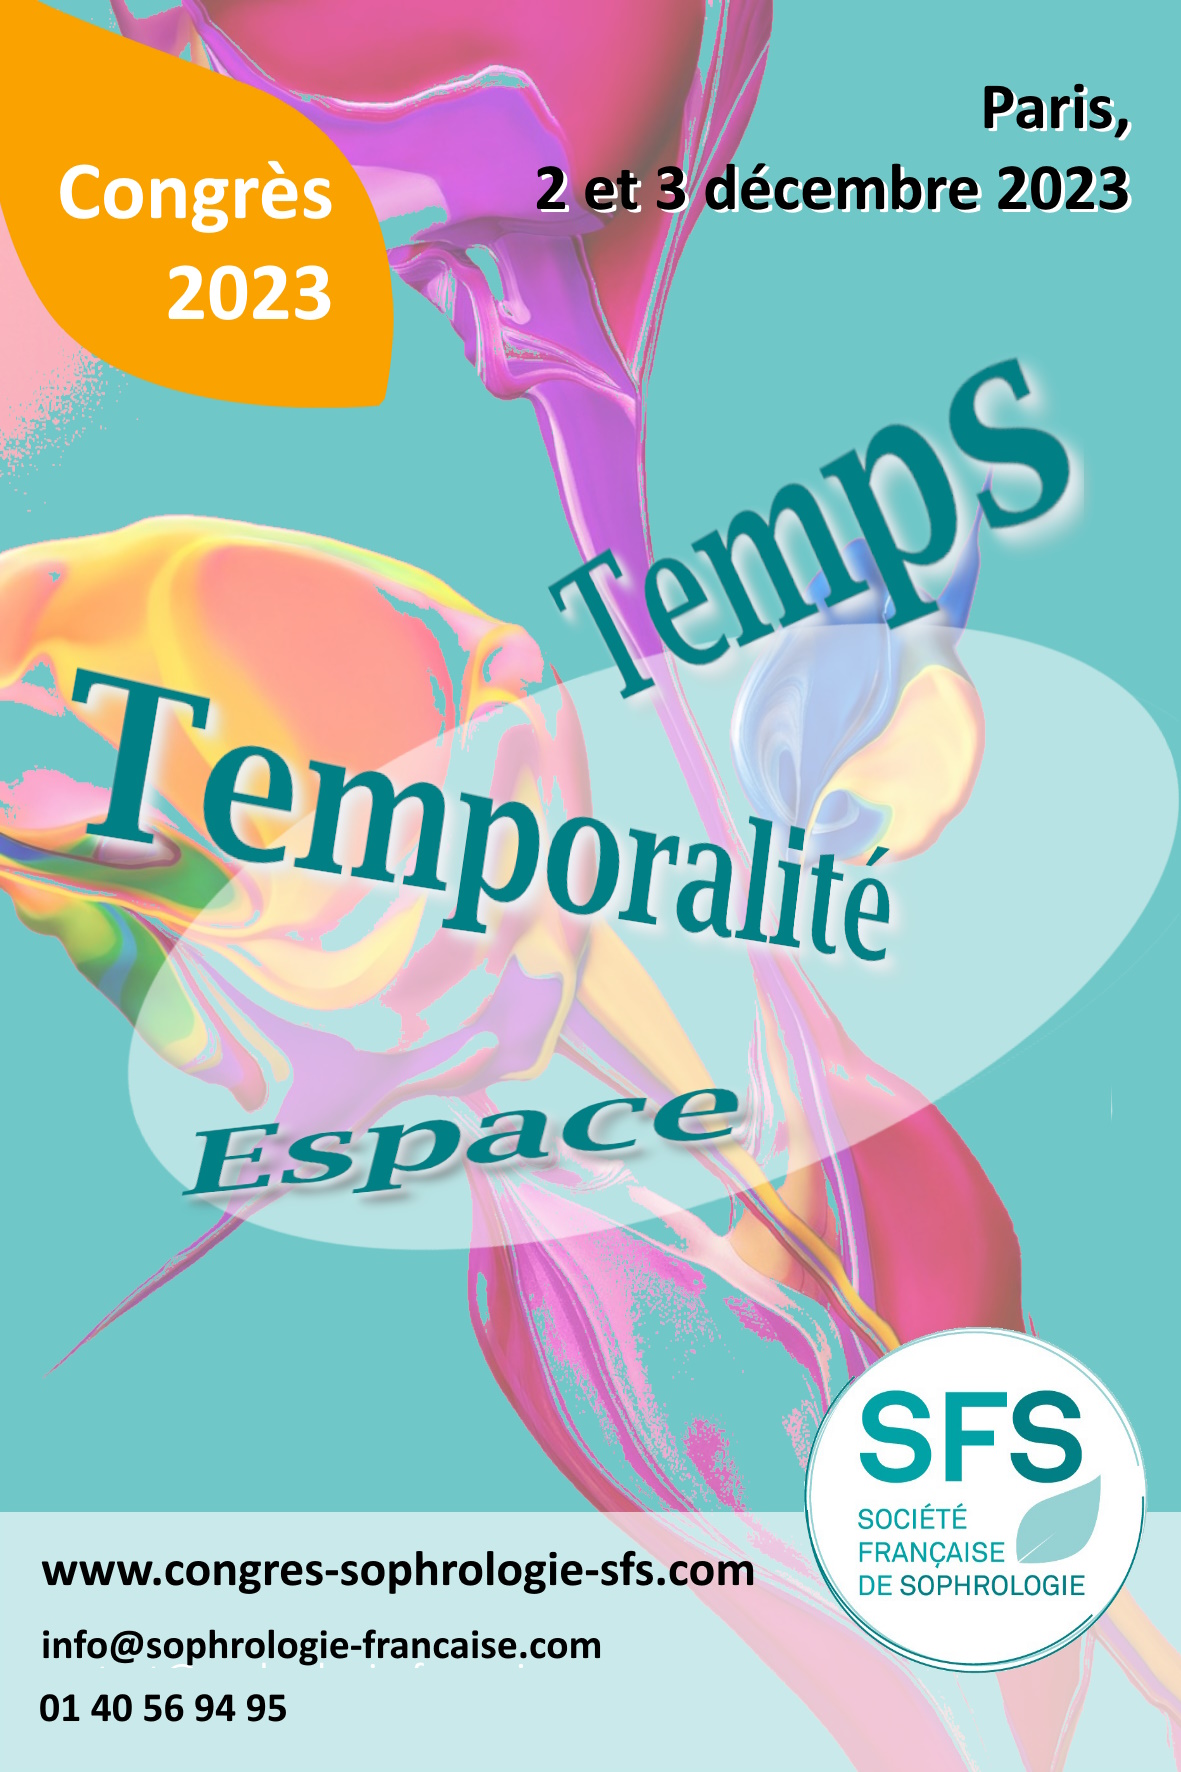 Congres-sophrologie-SFS-2023